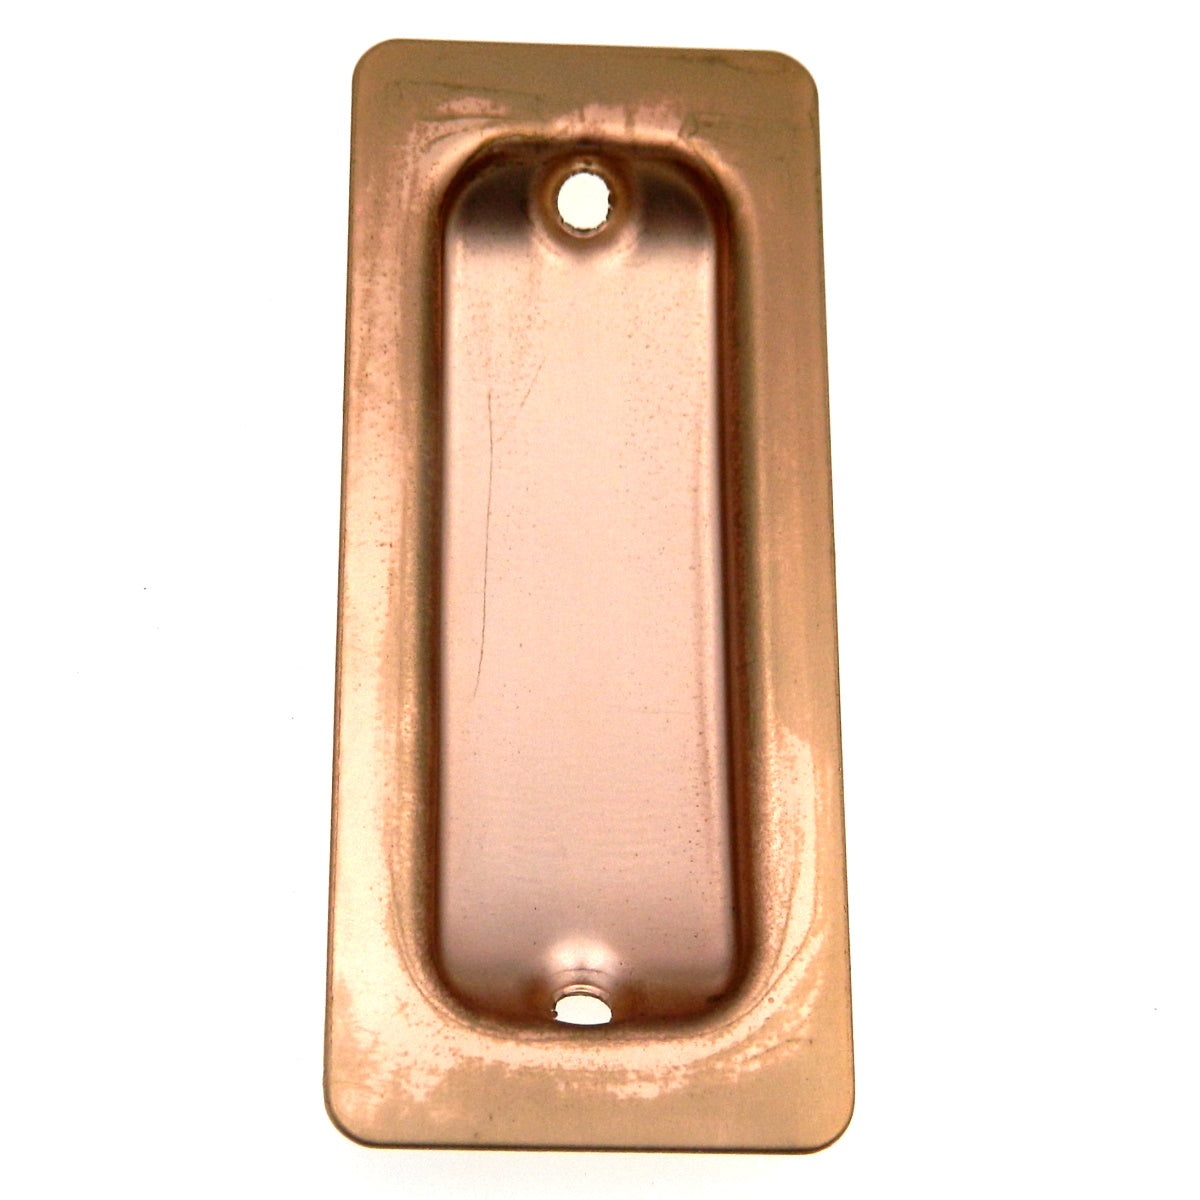 Vintage Washington Satin Bronze 3 5/16" Door Pull For Sliding Doors 1610S-US10